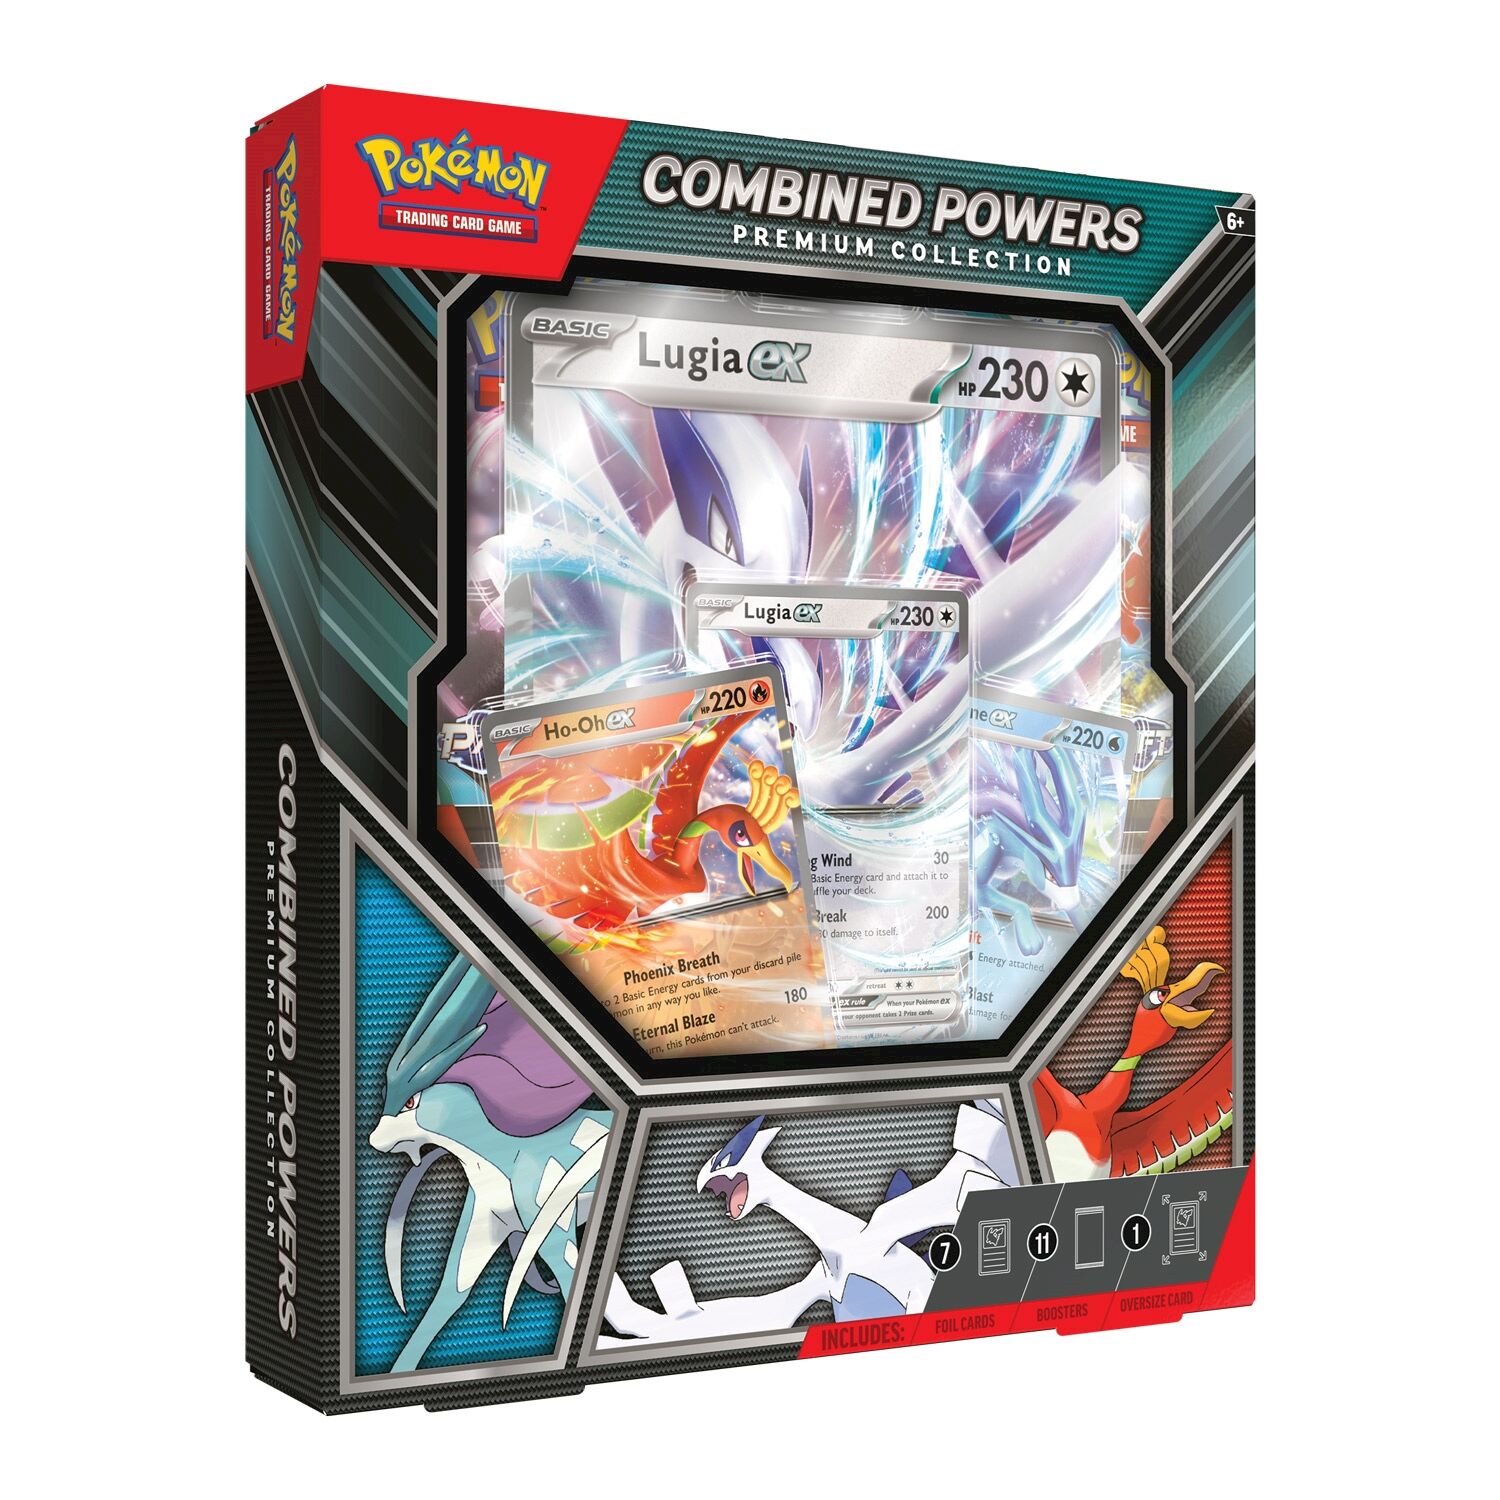 Pokémon TCG: Combined Powers Premium Collection - EN